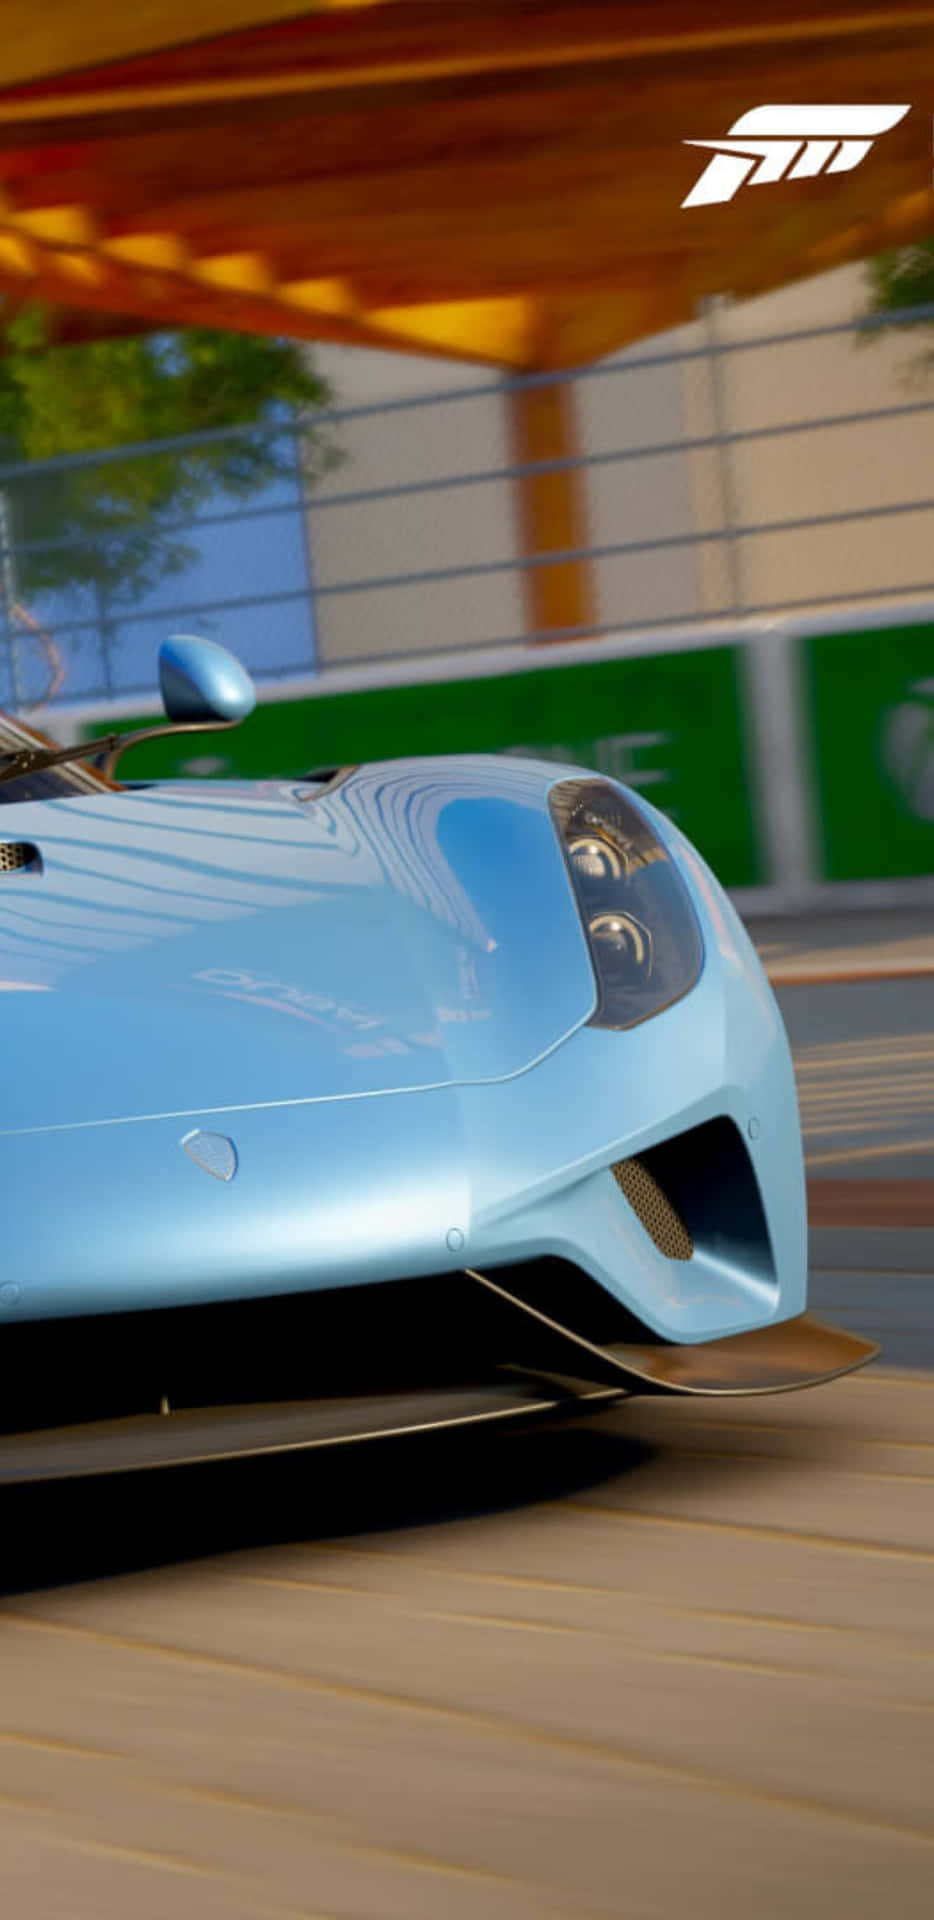 Taen Runda I Forza Motorsport 7 På Din Pixel 3xl